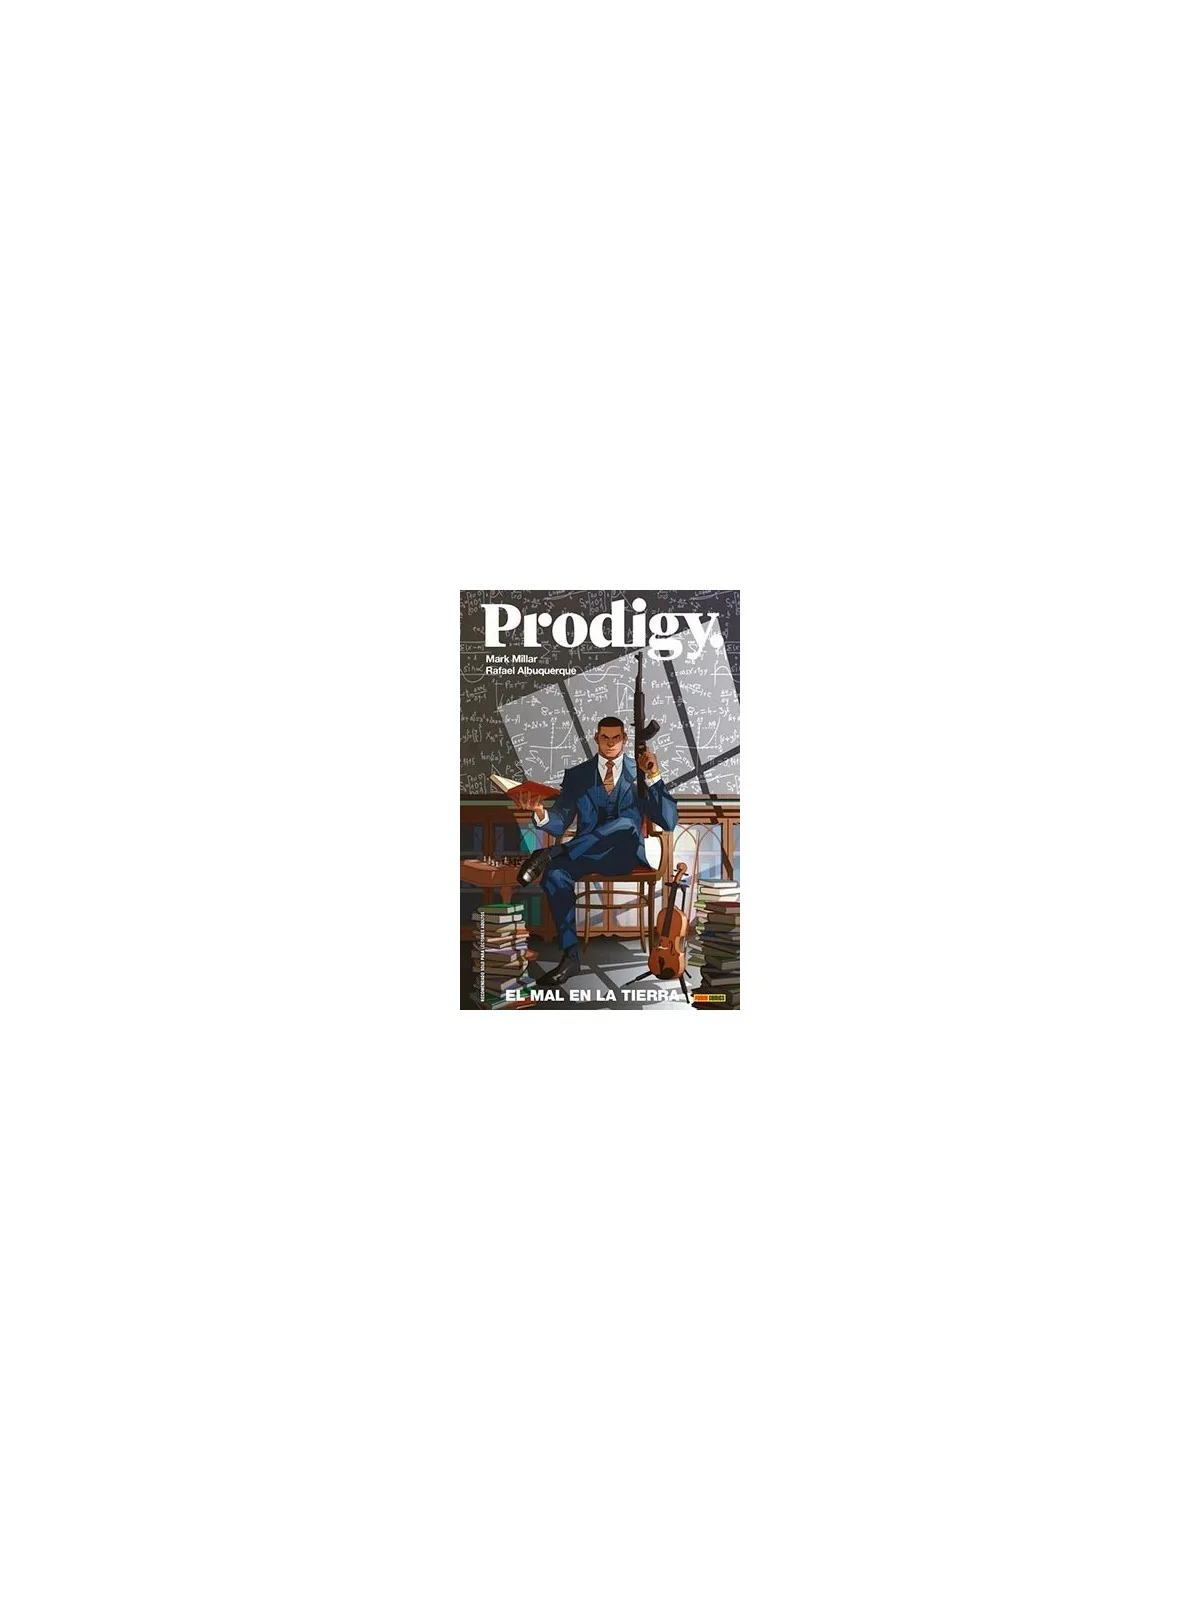 Comprar Prodigy 01: El Mal en la Tierra barato al mejor precio 17,10 €